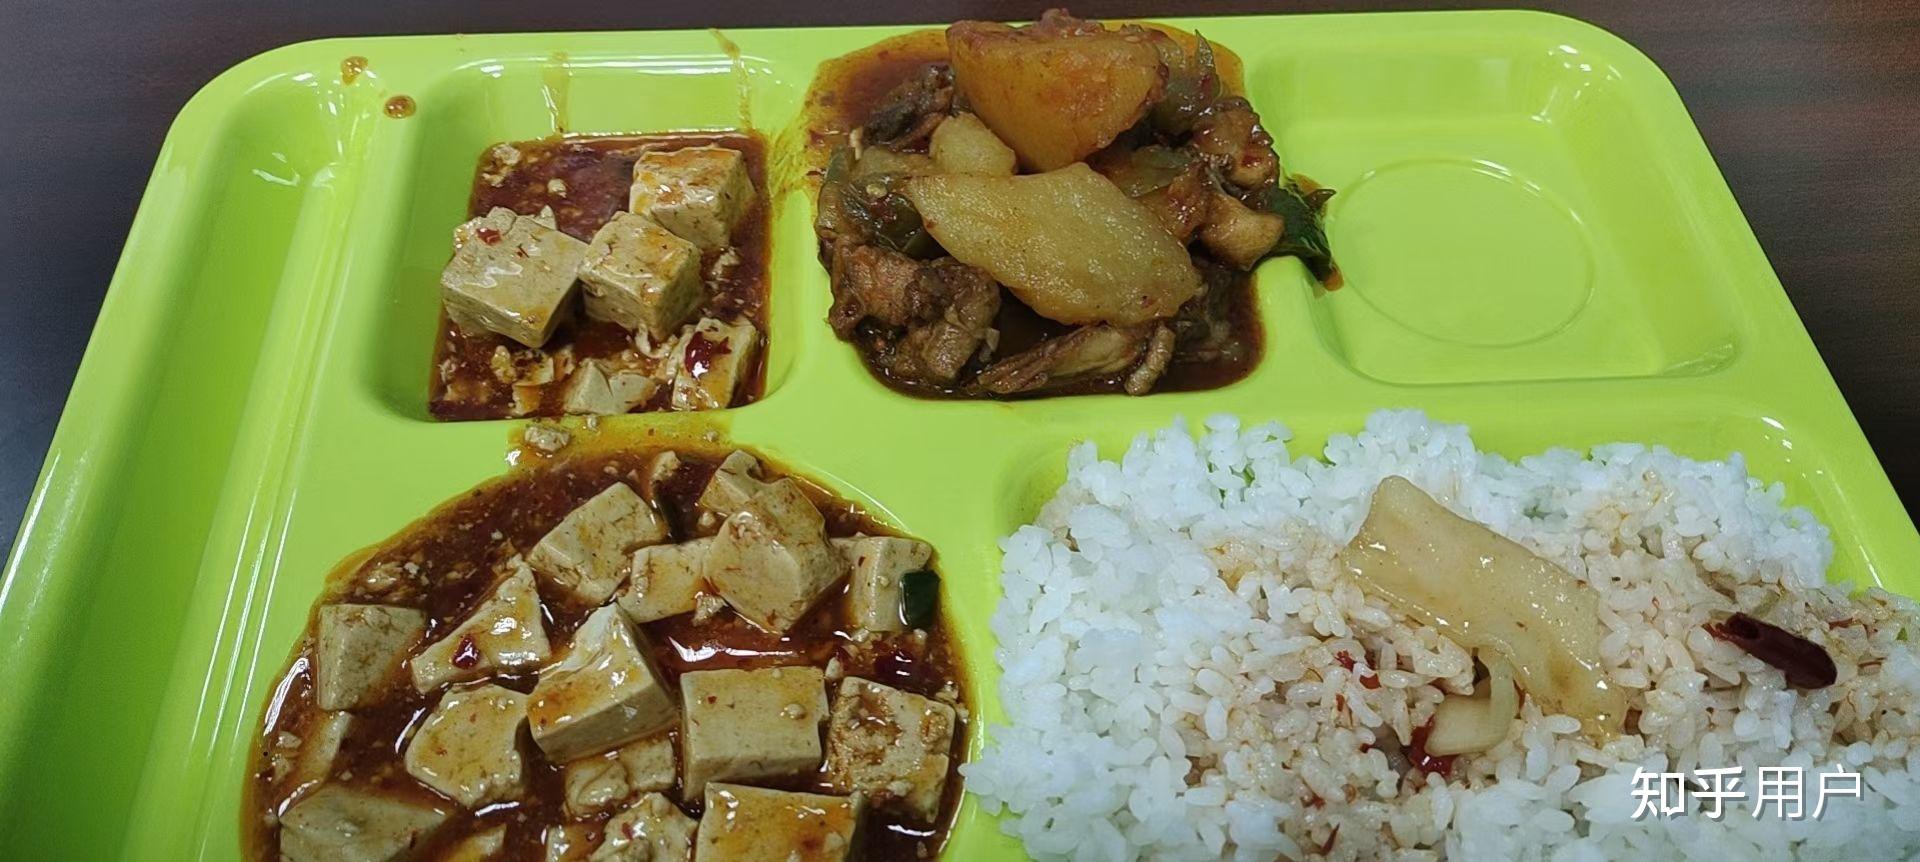 一句话描述新疆大学的食堂有多好吃?